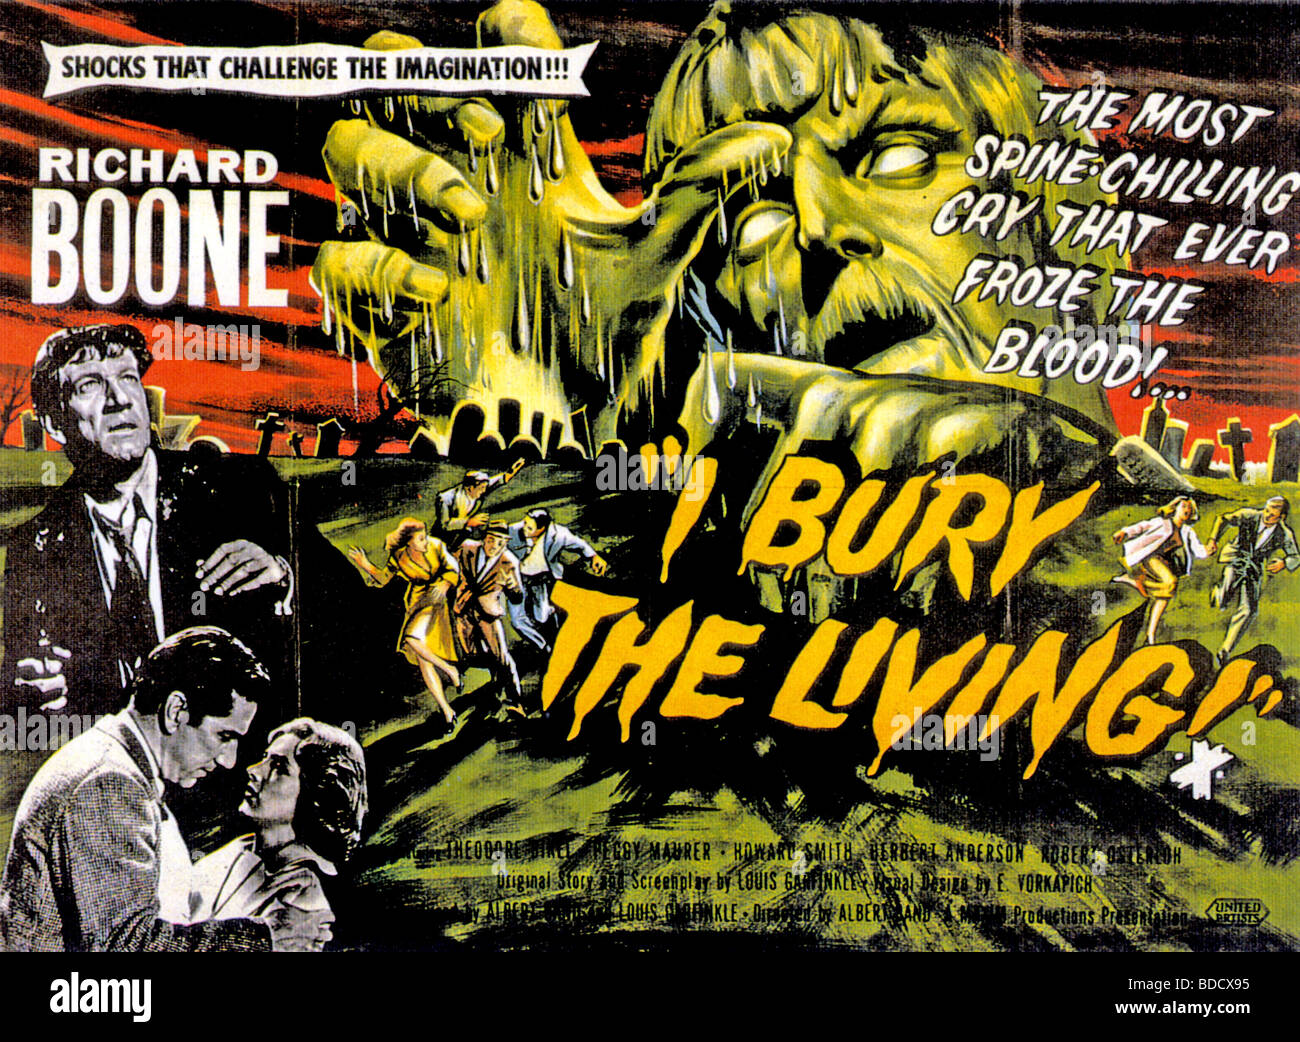 Mi seppellire i viventi - Poster per 1957 UA film con Richard Boone Foto Stock